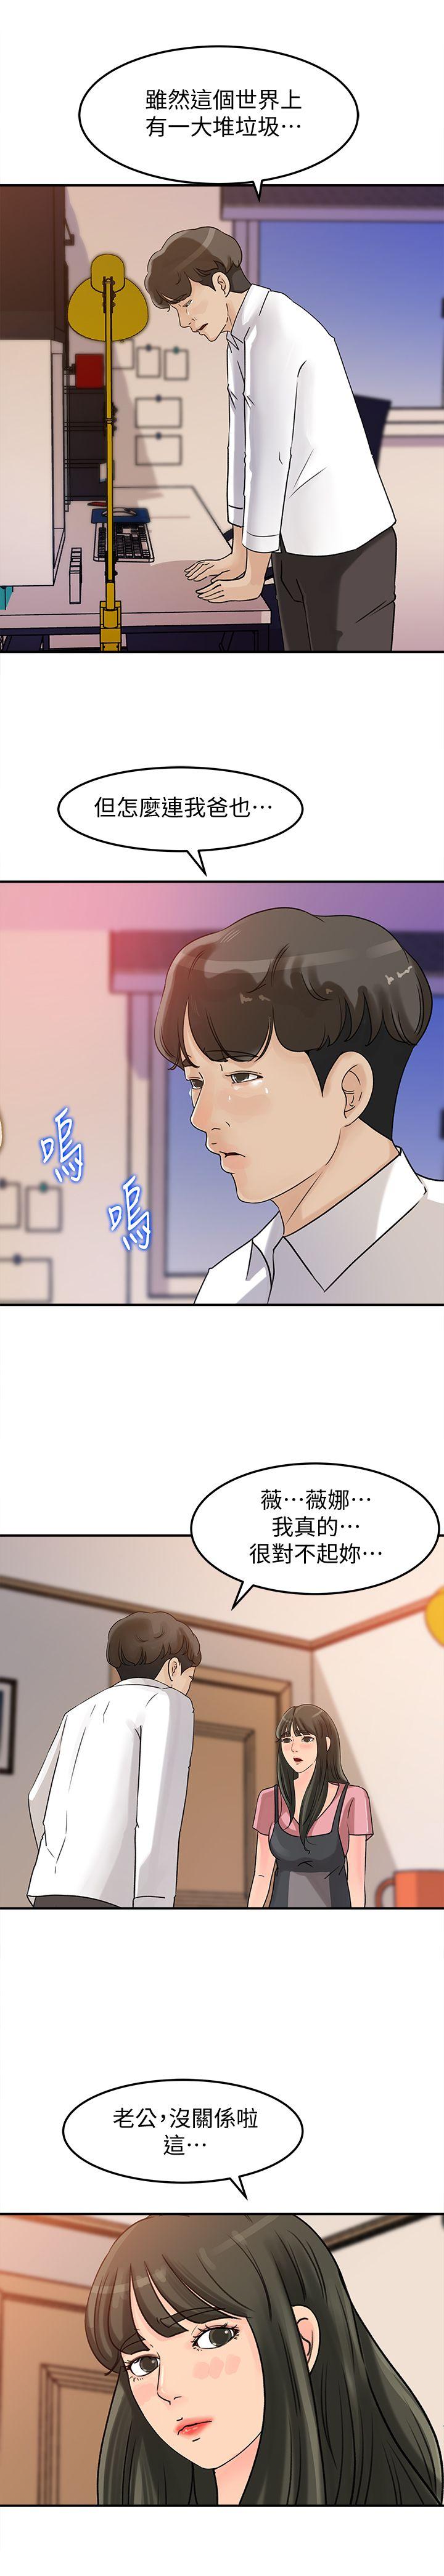 《媳妇的诱惑》漫画 第15话-慾望败露